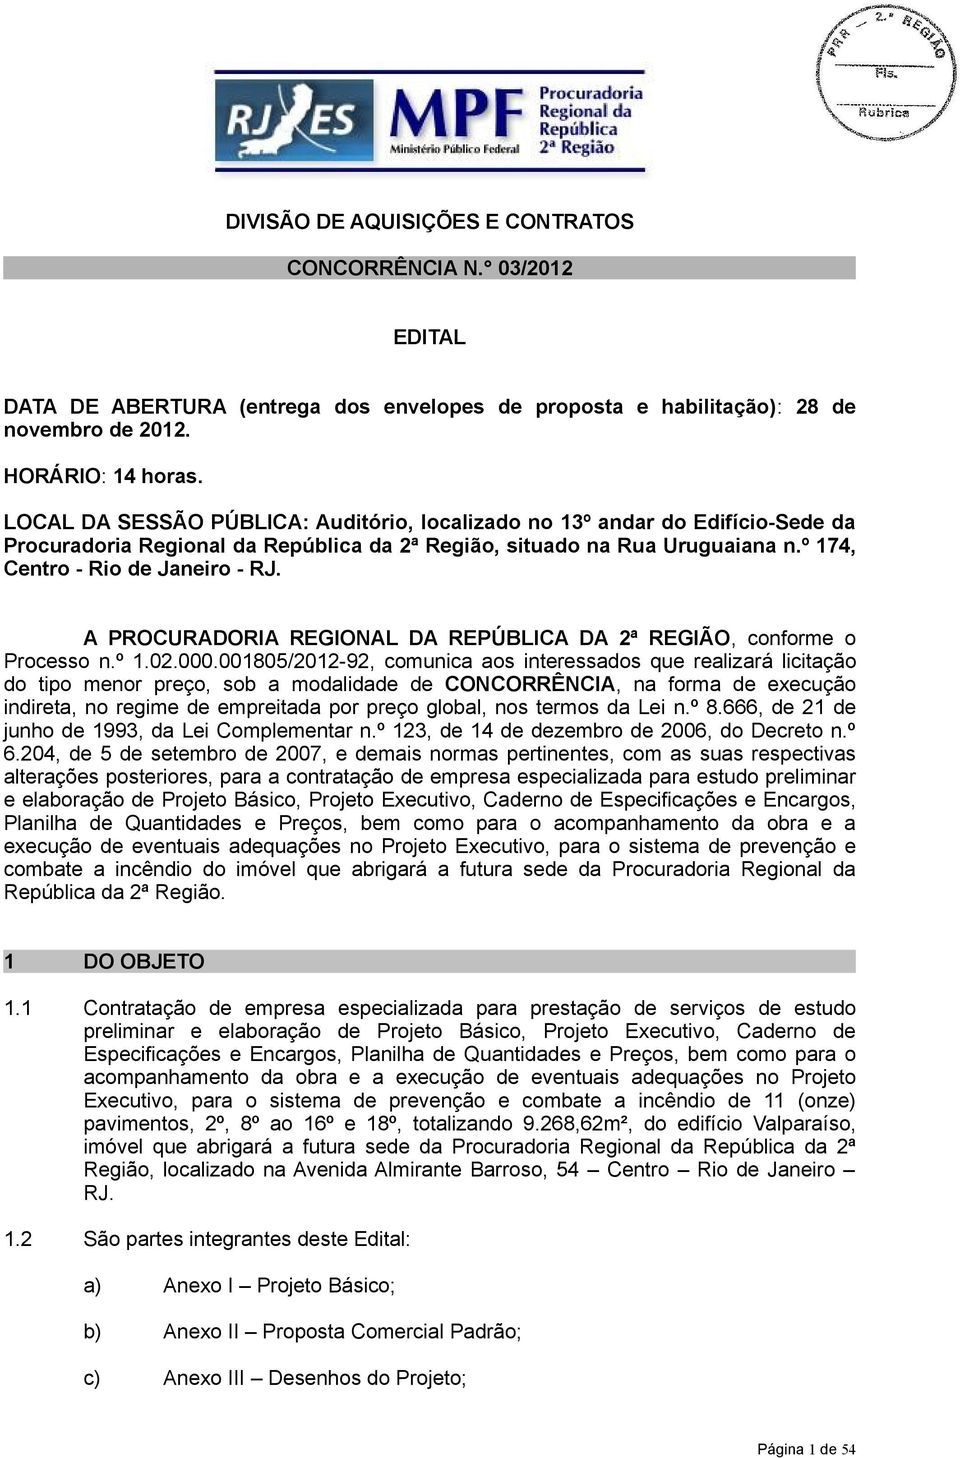 A PROCURADORIA REGIONAL DA REPÚBLICA DA 2ª REGIÃO, conforme o Processo n.º 1.02.000.